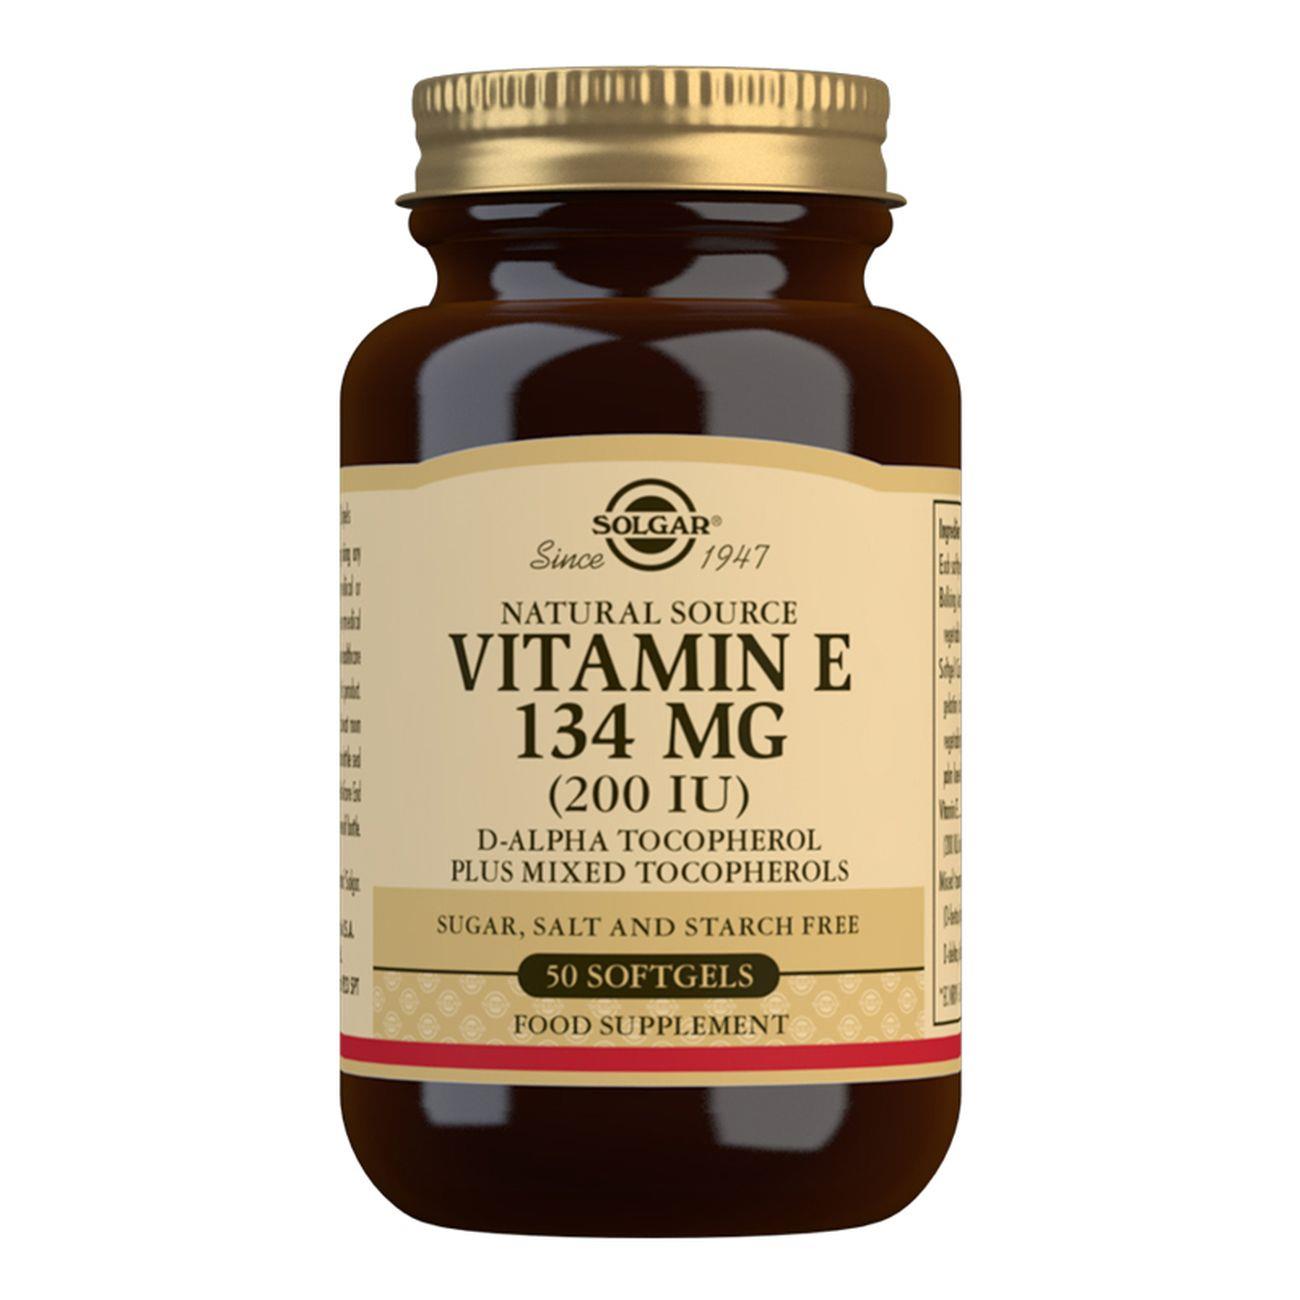 Vitamin E 134 mg (200 IU) - 50 Softgels